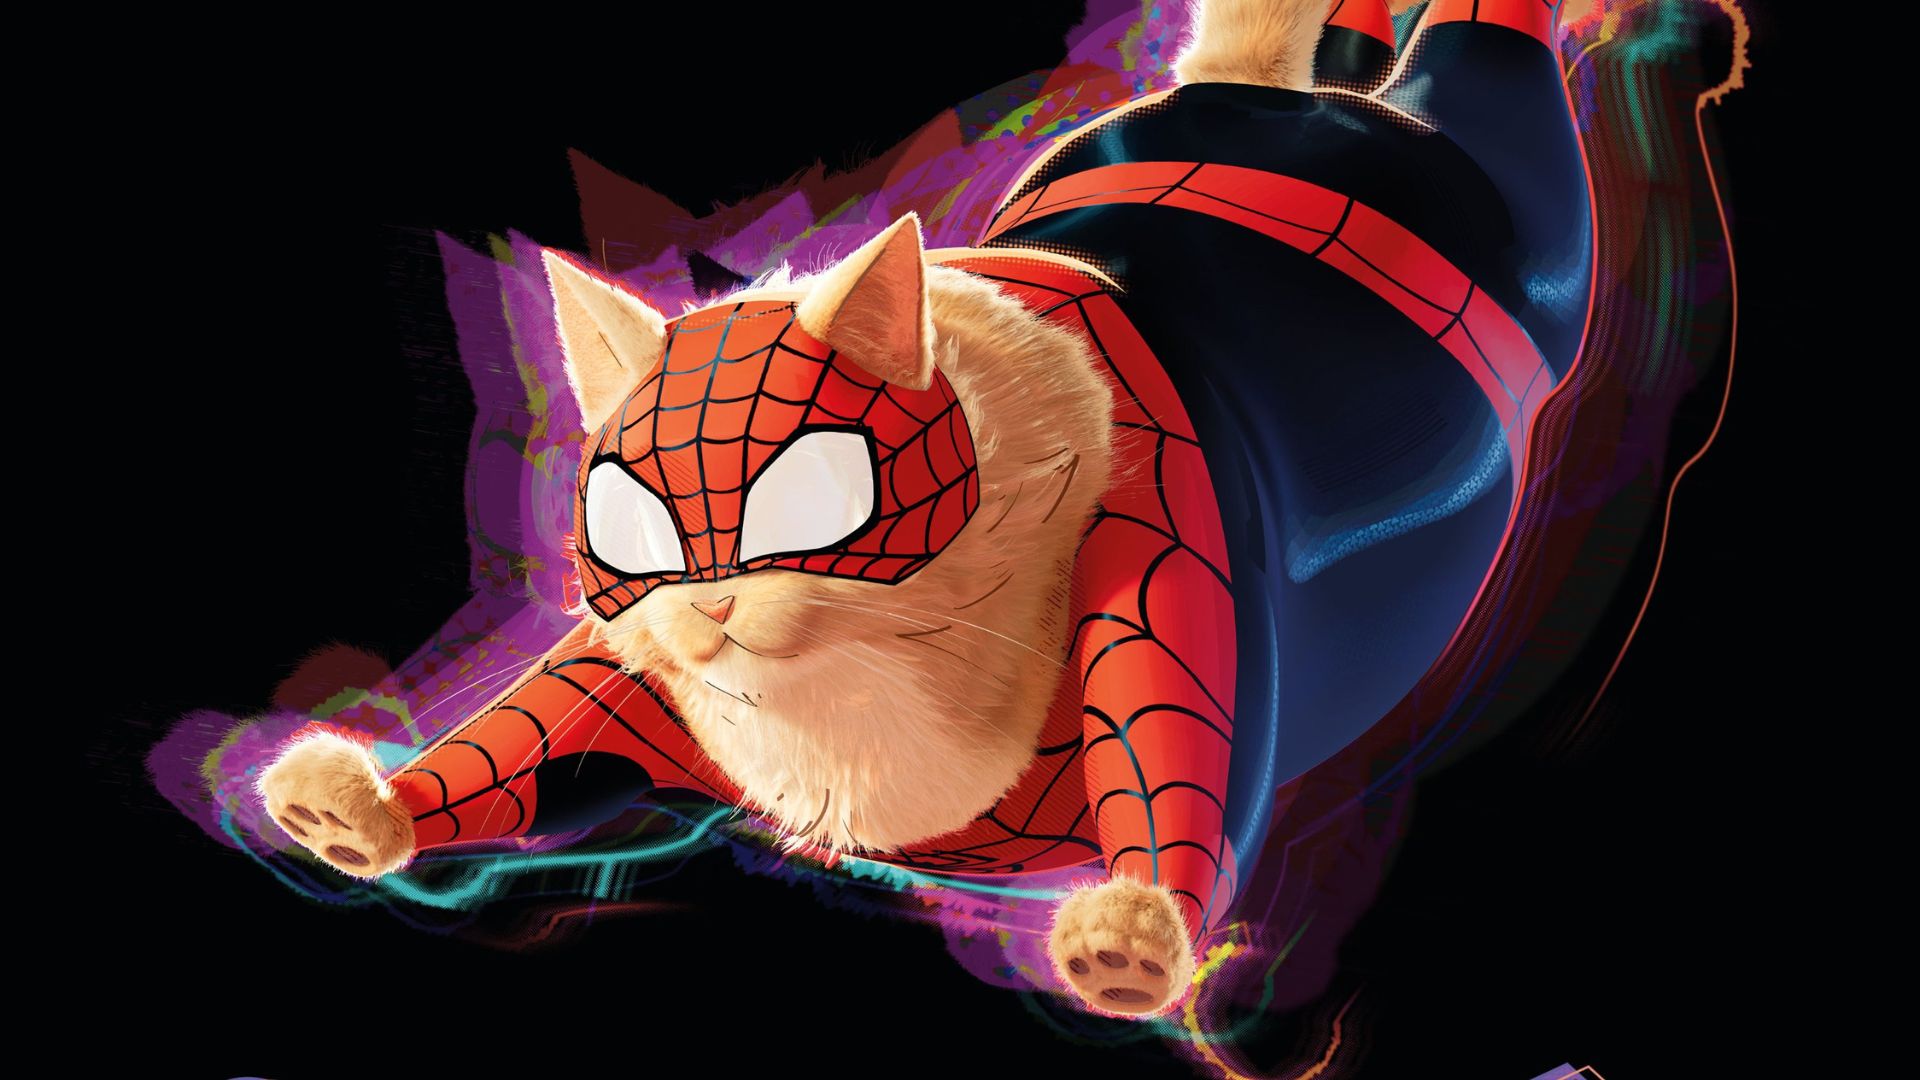 O Gato-Aranha estará em "Homem-Aranha: Através do Aranhaverso" (Foto: Divulgação/Sony Pictures)